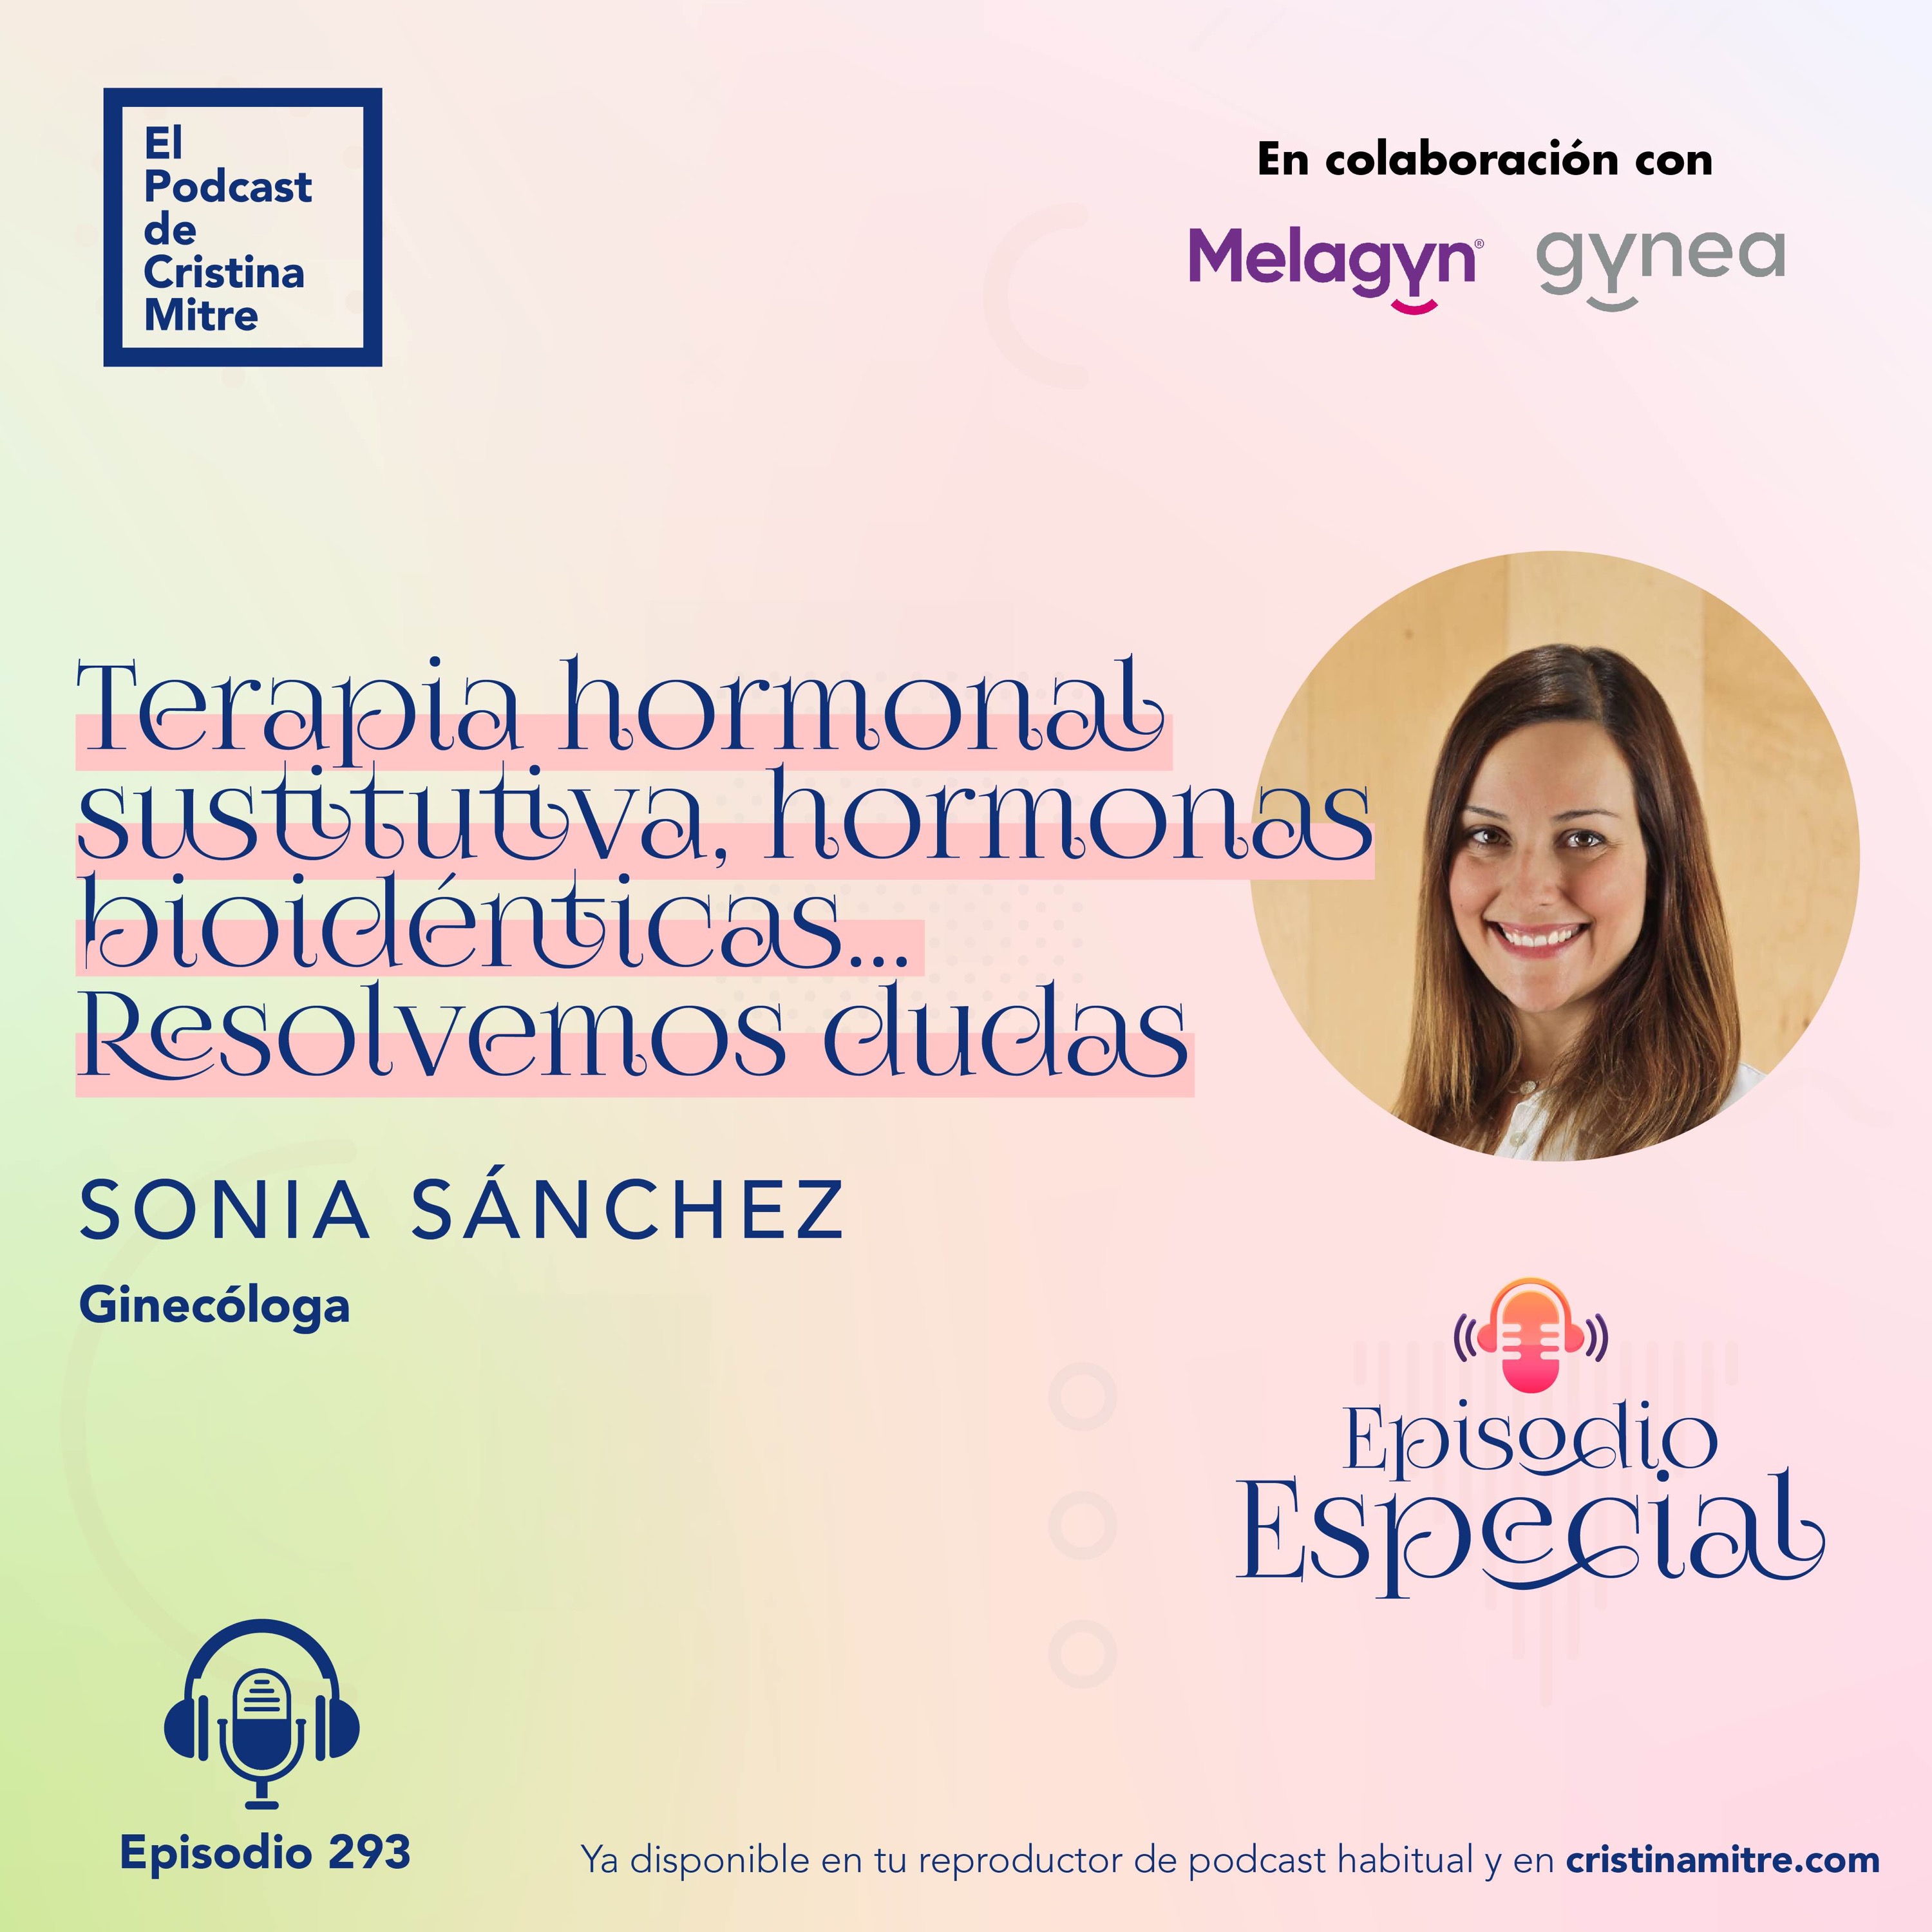 Terapia hormonal sustitutiva, hormonas bioidénticas... resolvemos dudas, con Sonia Sánchez. Episodio 293